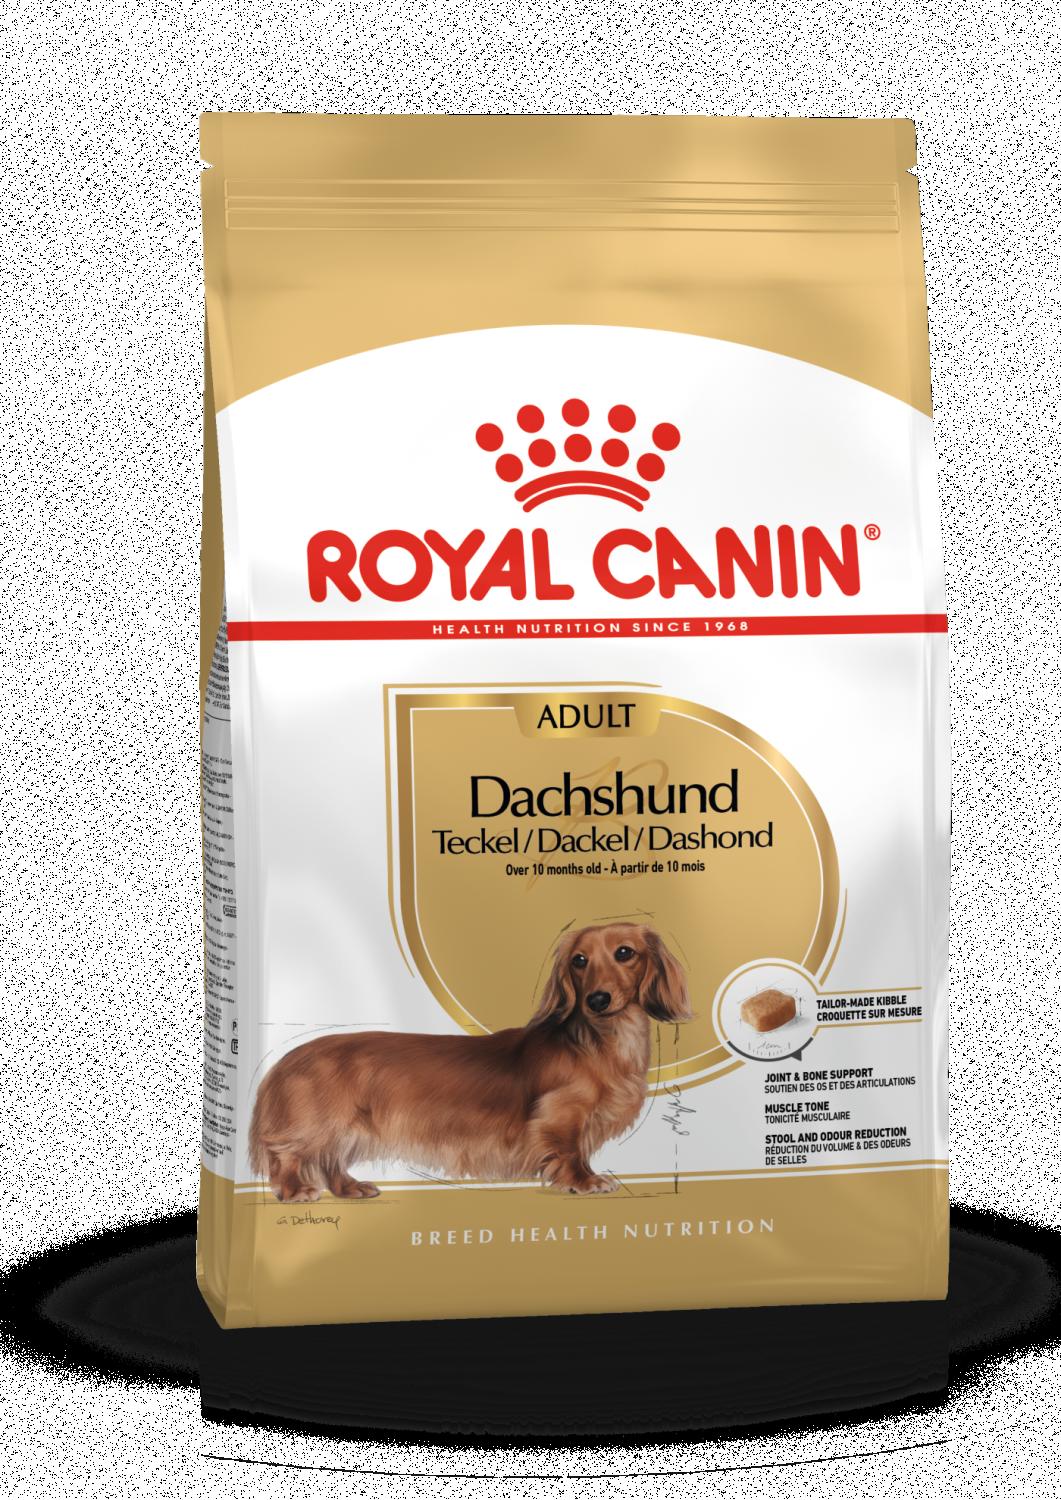 Royal Canin Dachshund Adult 1,5 kg